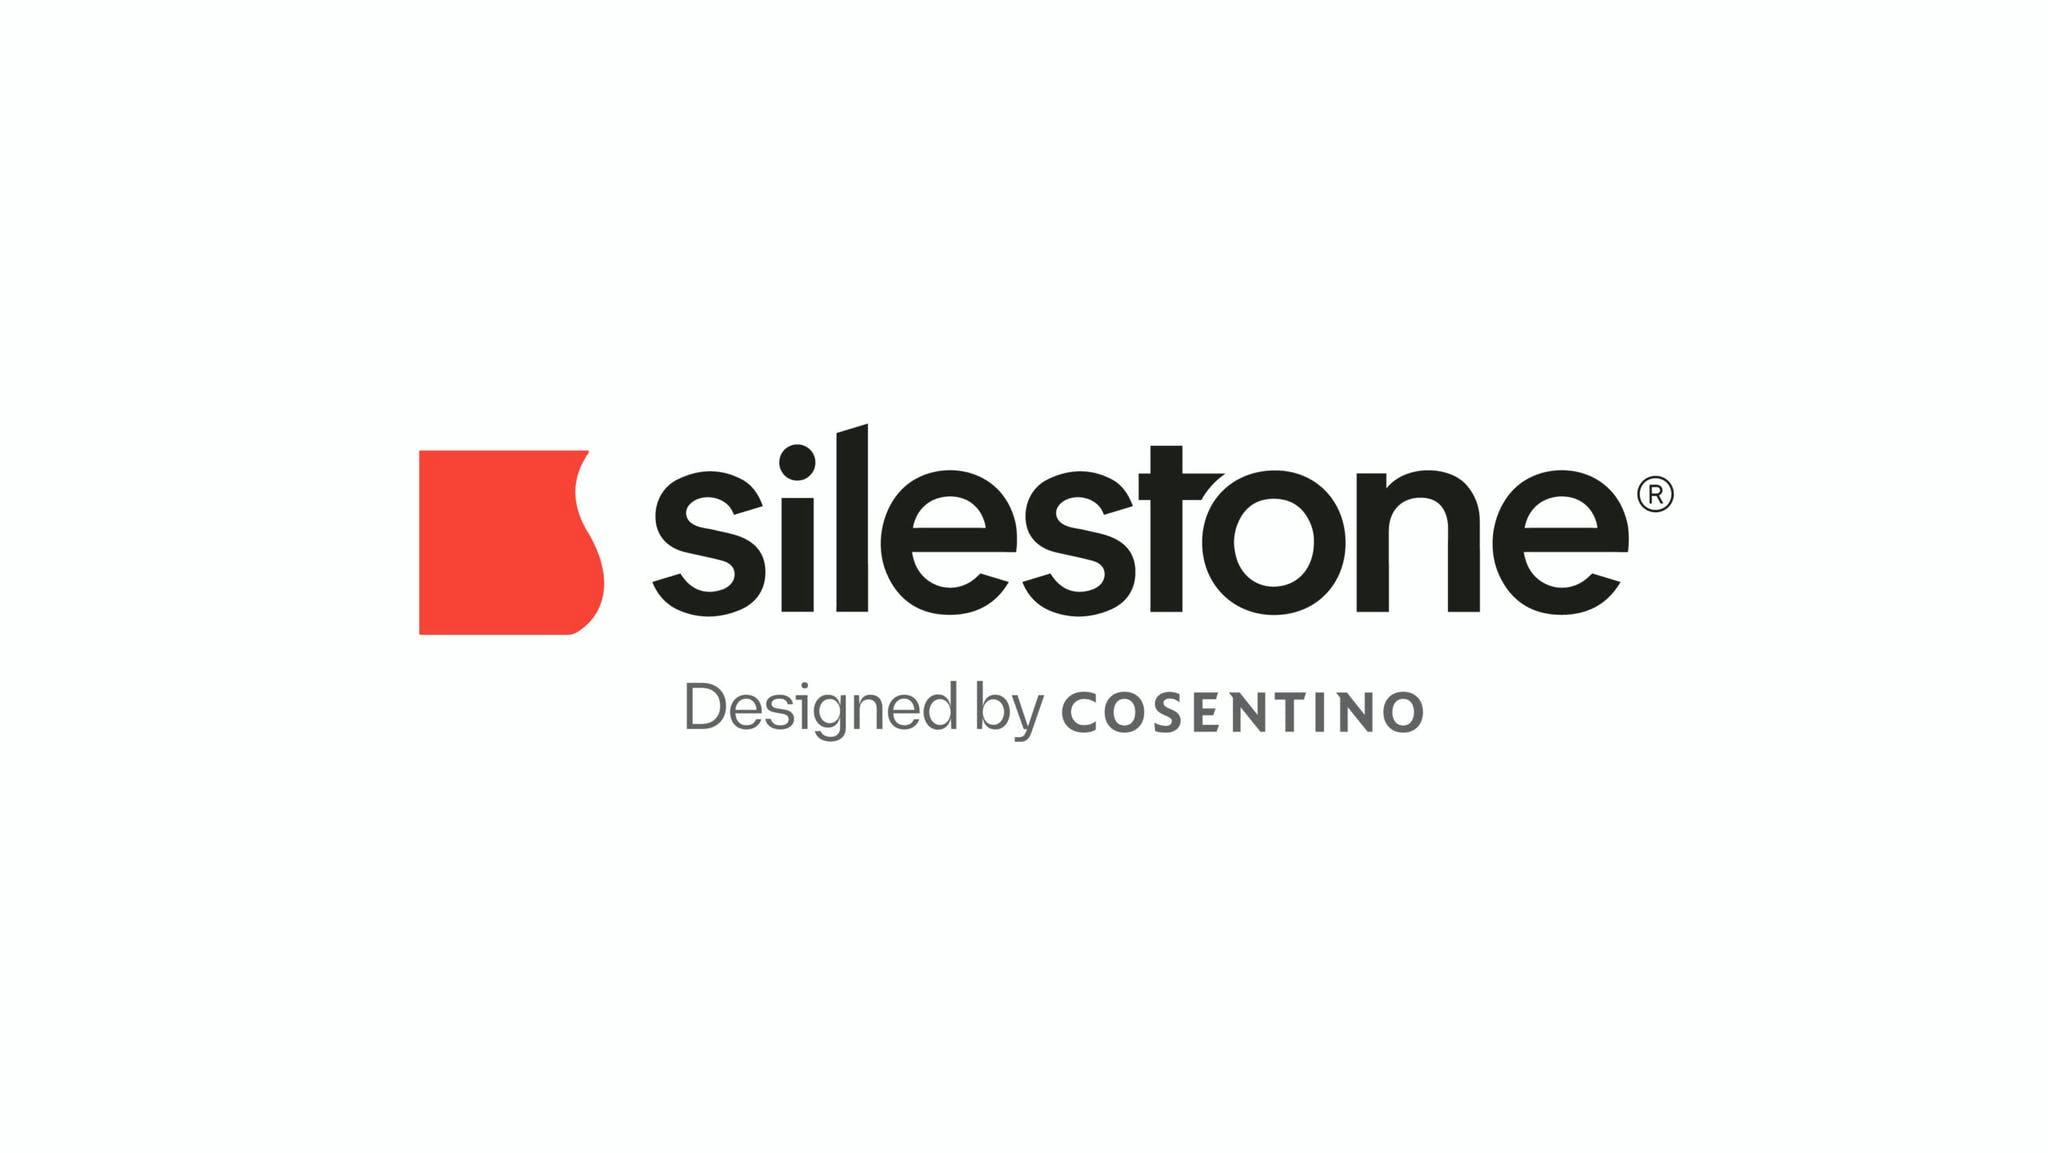 Bildnummer 32 des aktuellen Abschnitts von Cosentino präsentiert das neue Image von Silestone® von Cosentino Deutschland